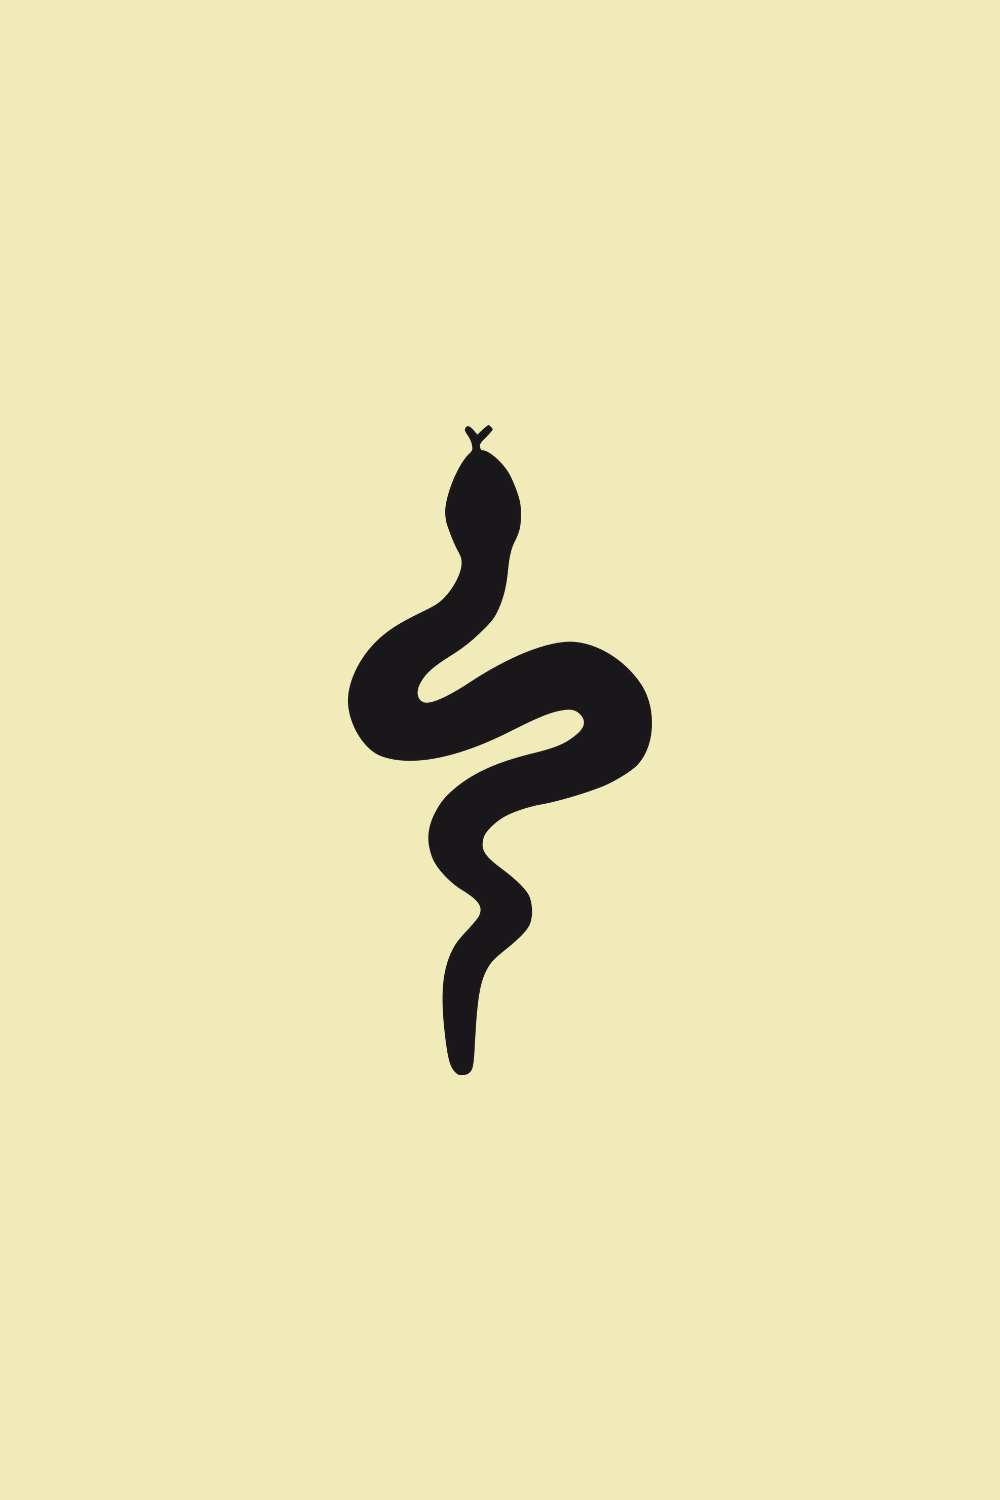 wallpaper snake. Wallpaper, Snake, Aesthetic